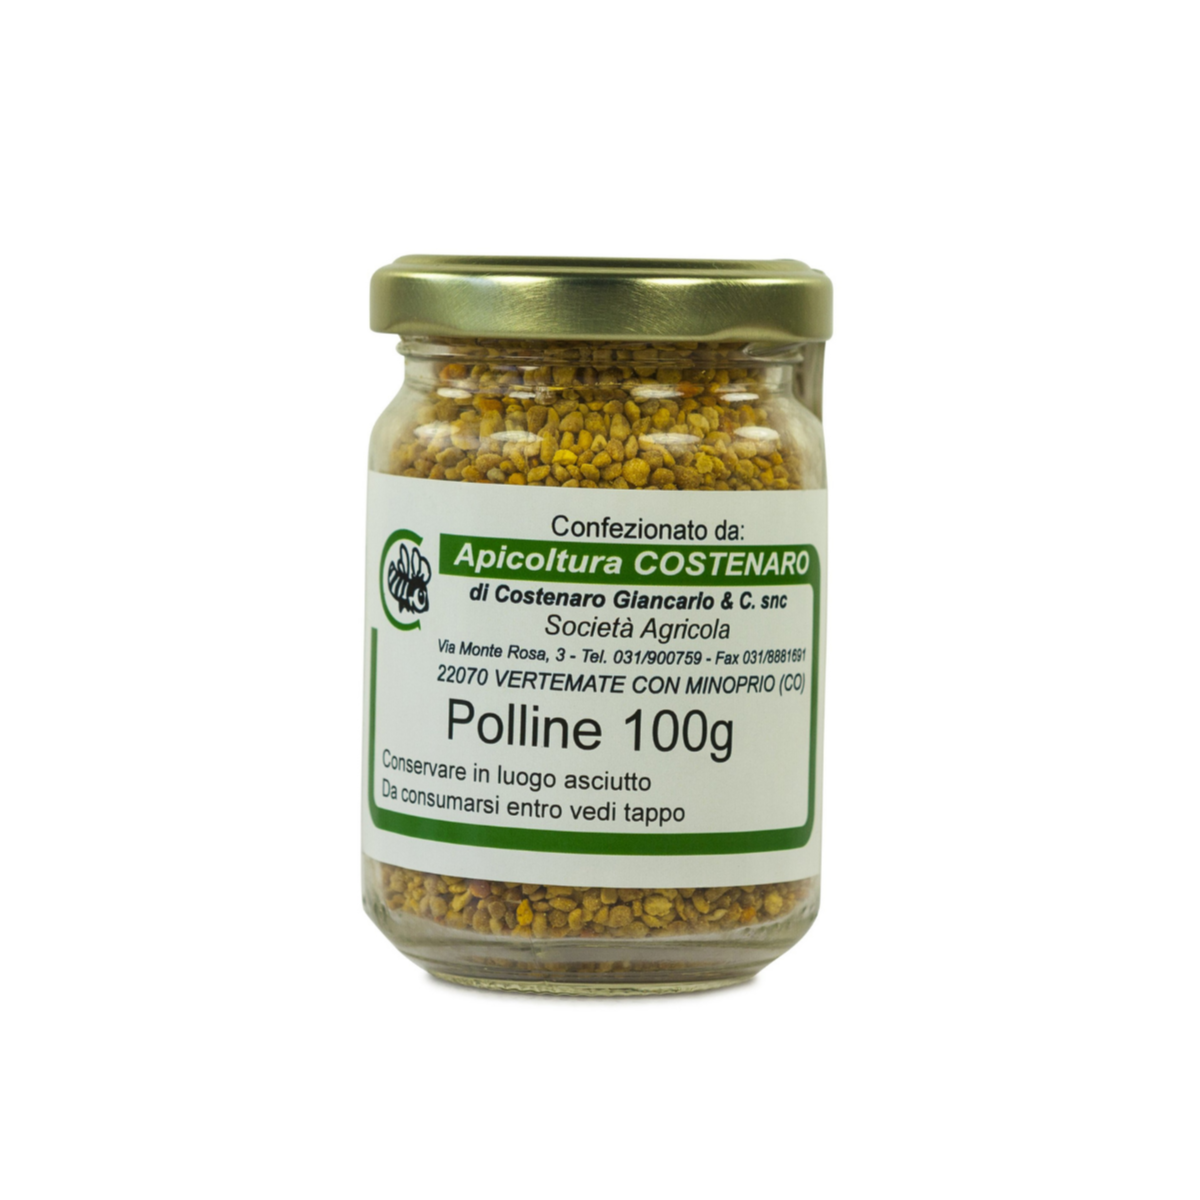 Polline di Api: acquista online Polline d'Api 100gr in offerta